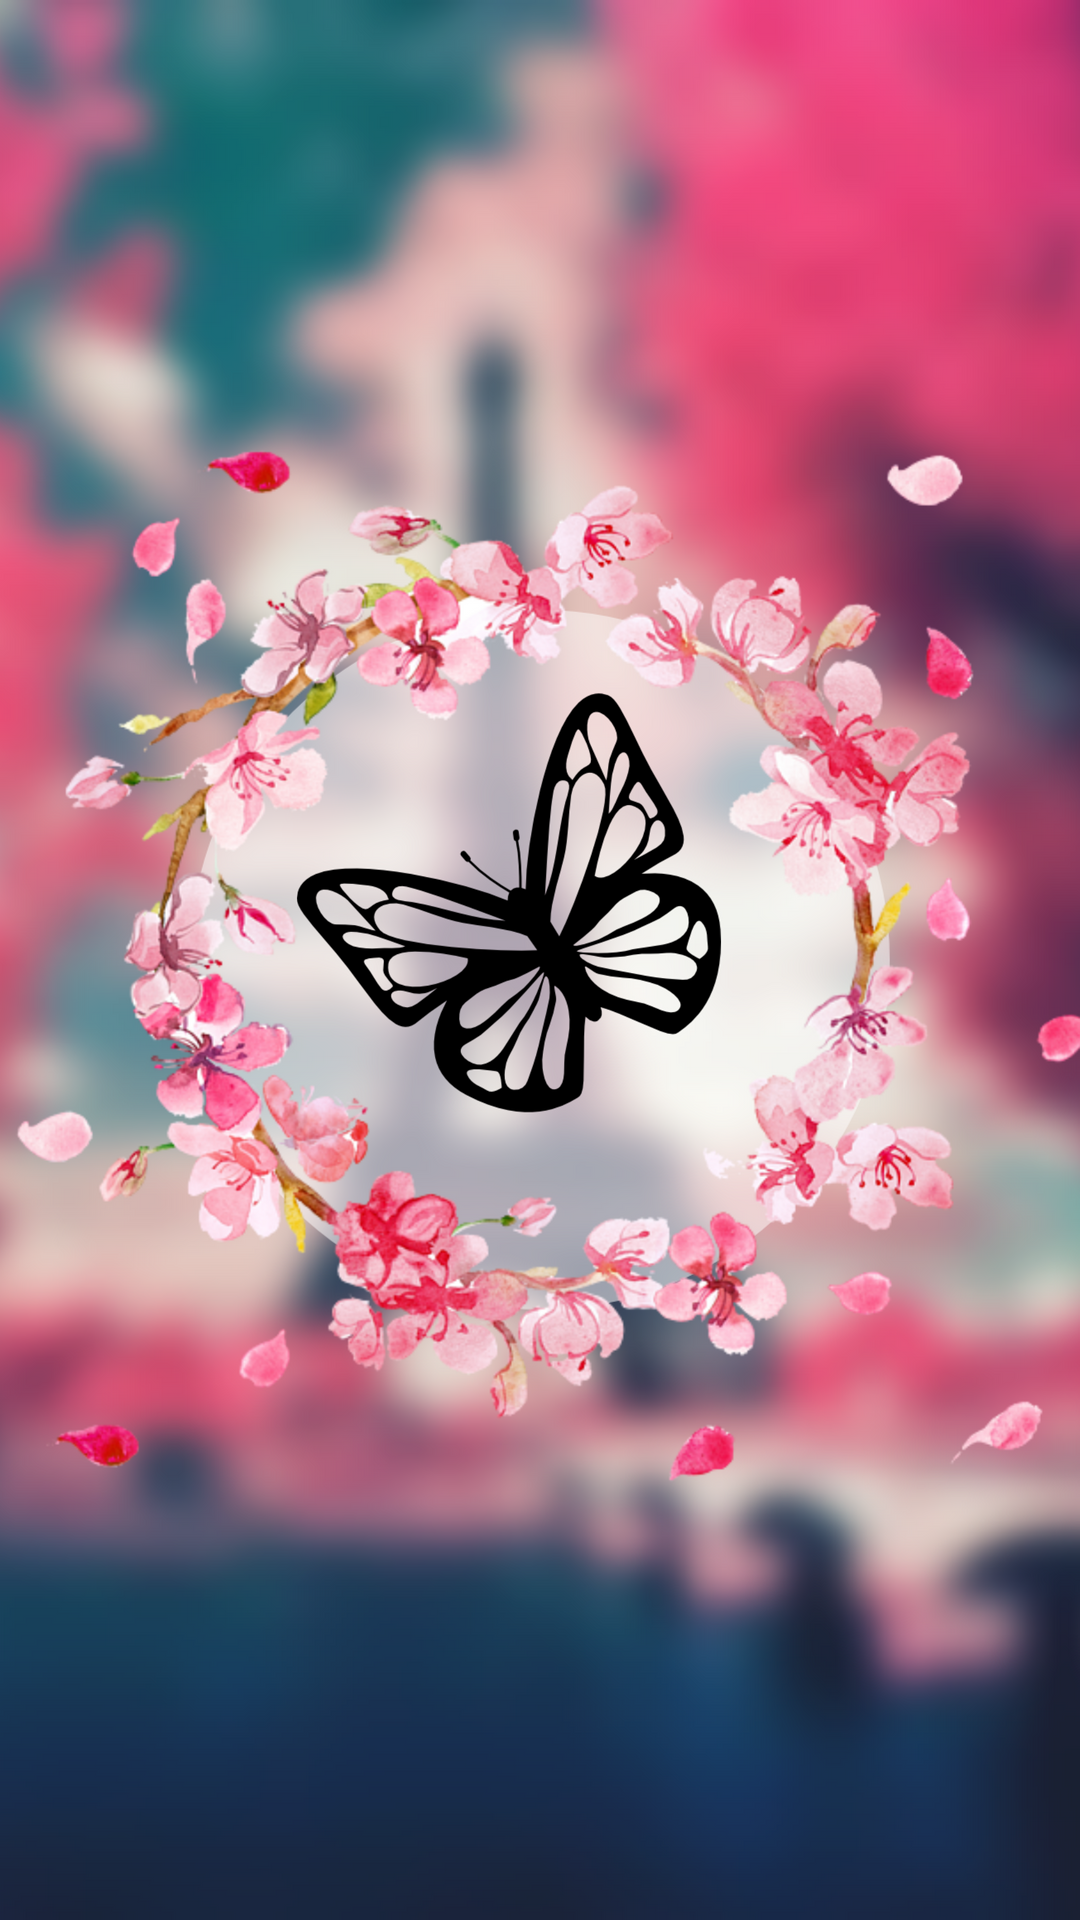 aplicativo de wallpaper,rosado,mariposa,primavera,cielo,diseño gráfico